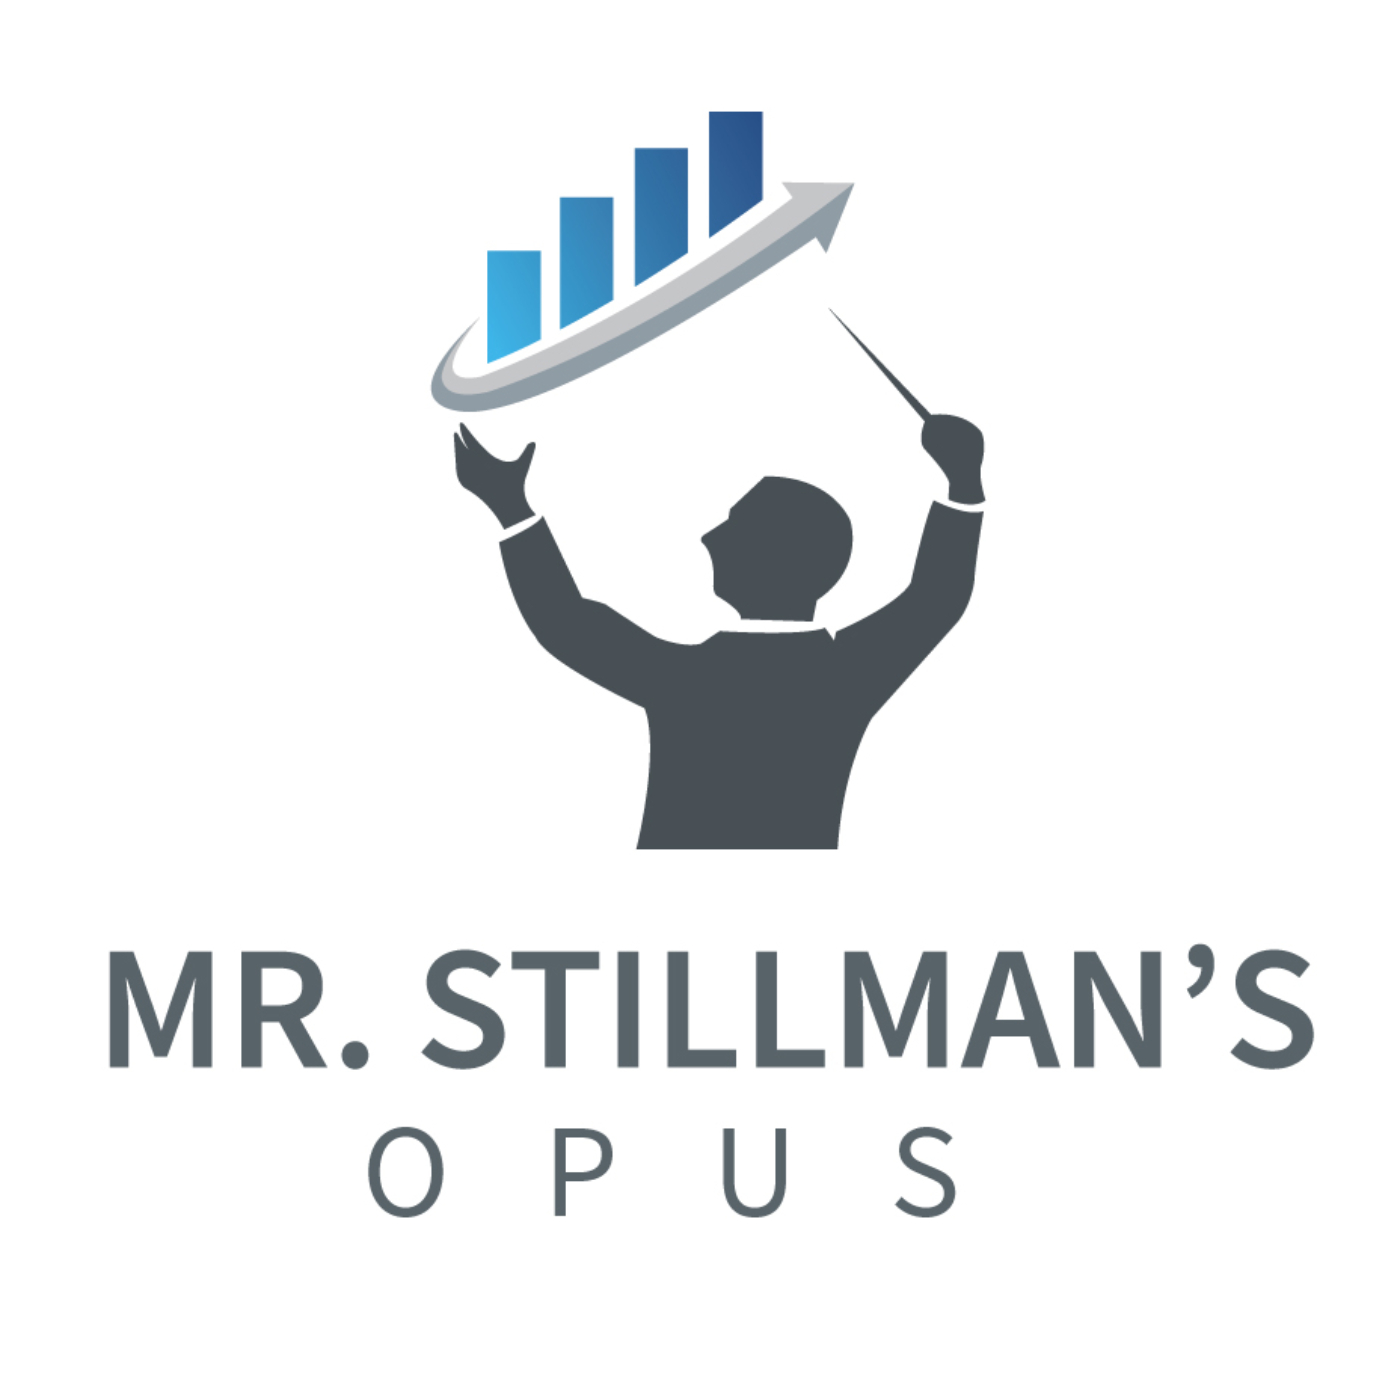 Mr. Stillman's Opus